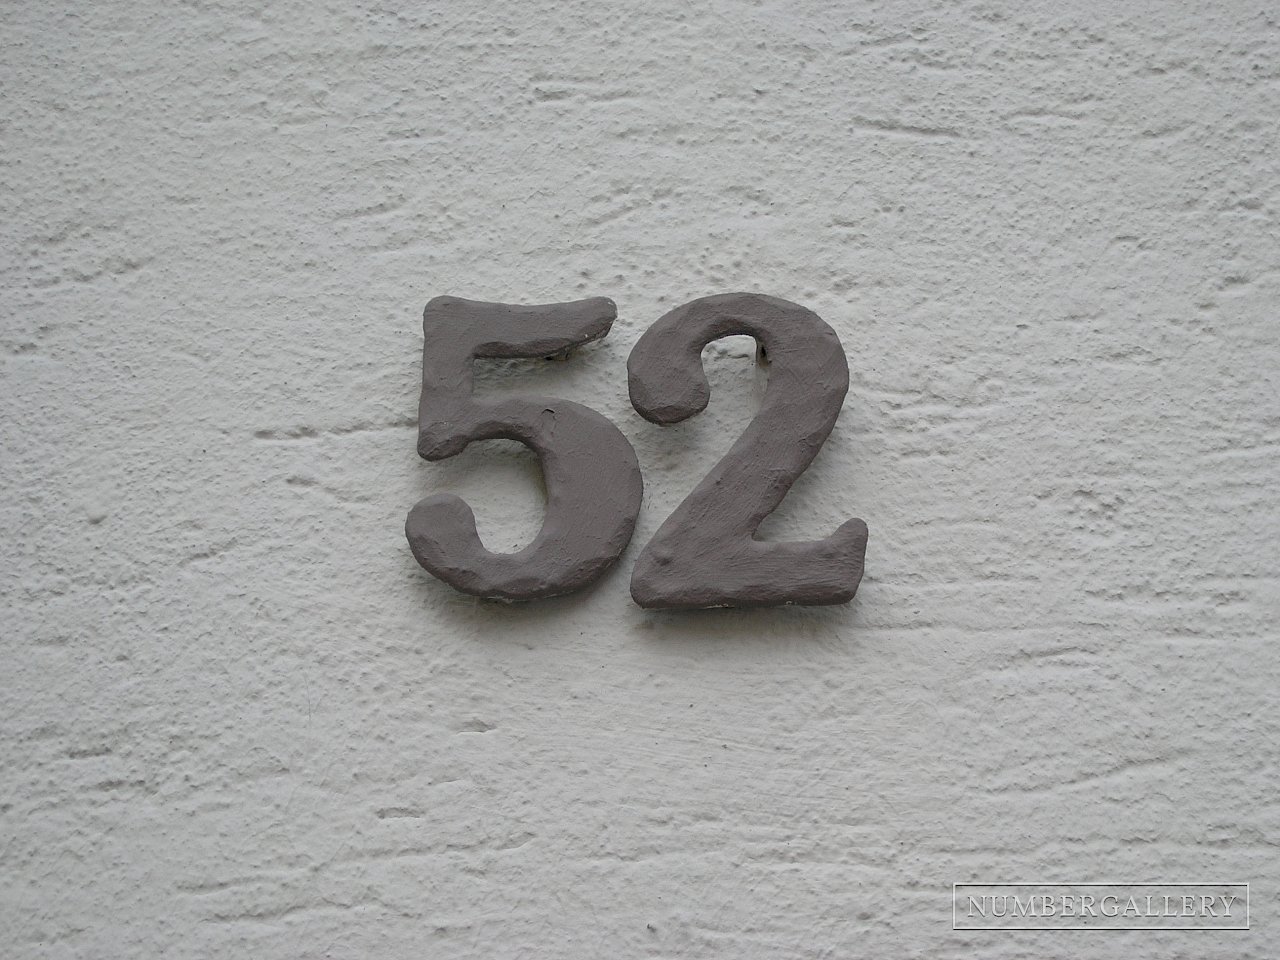 Hausnummer in Frankfurt am Main